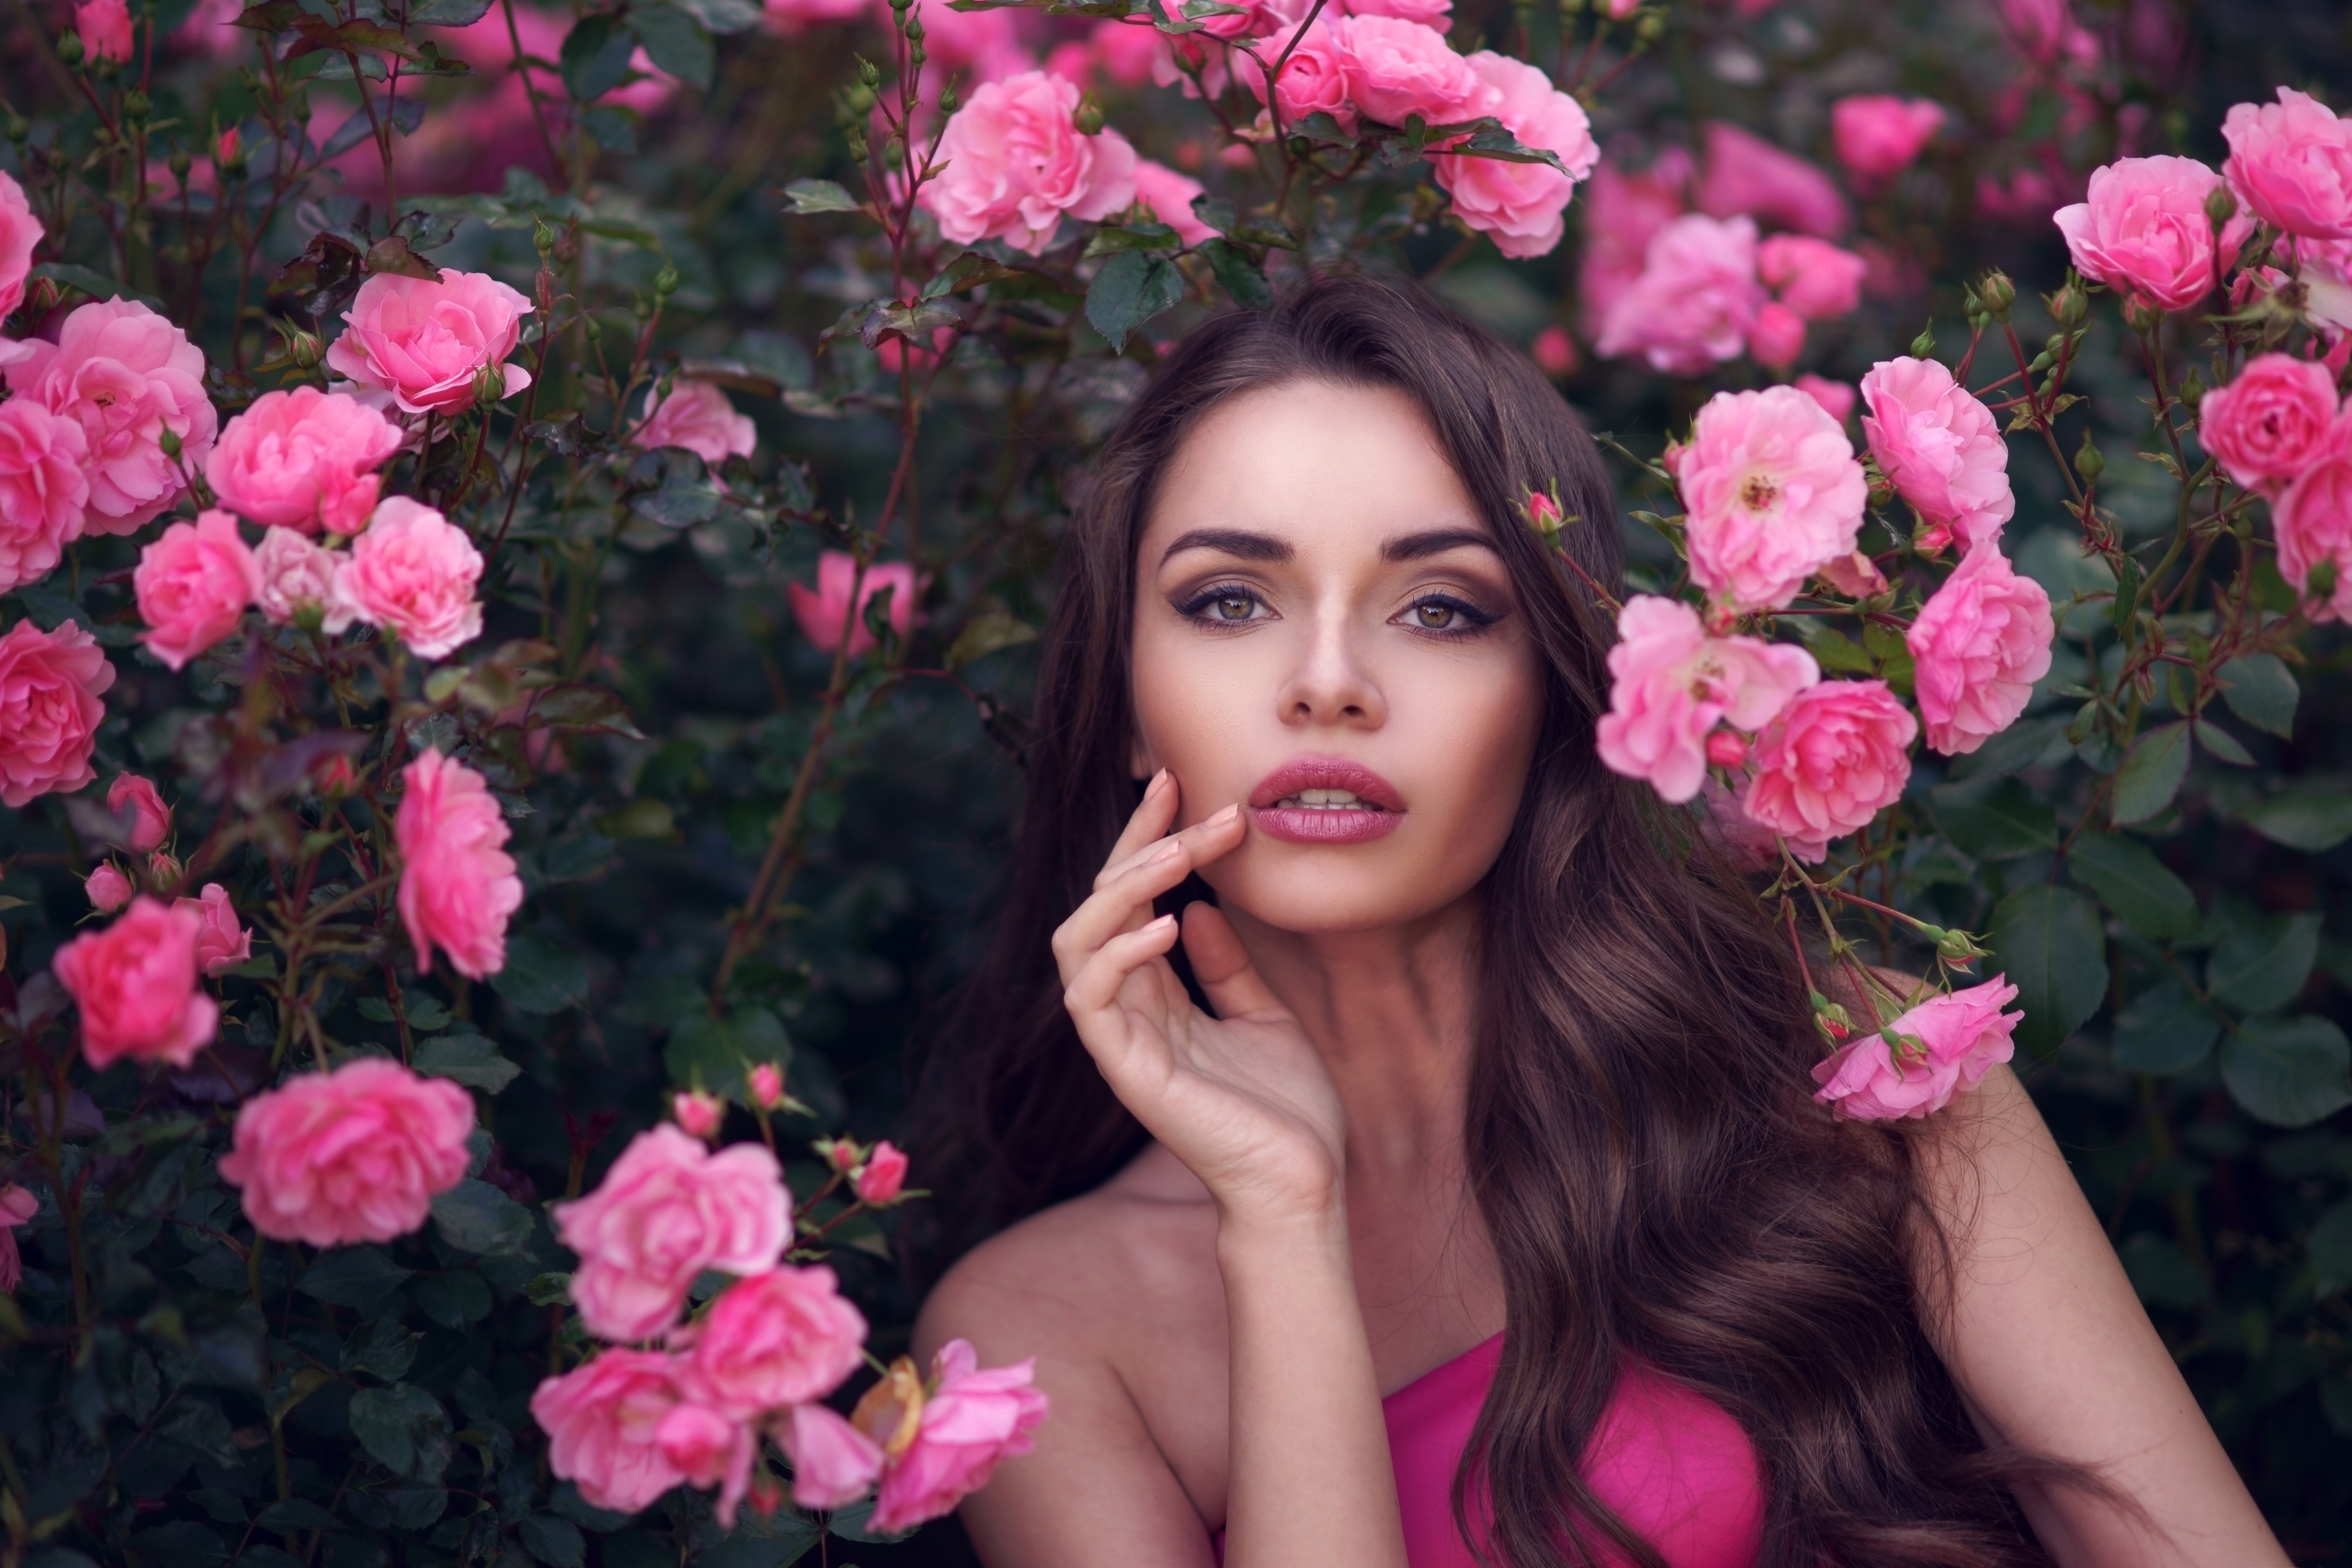 women, model, brunette, face, flower, lipstick, pink flower, rose bush, rose